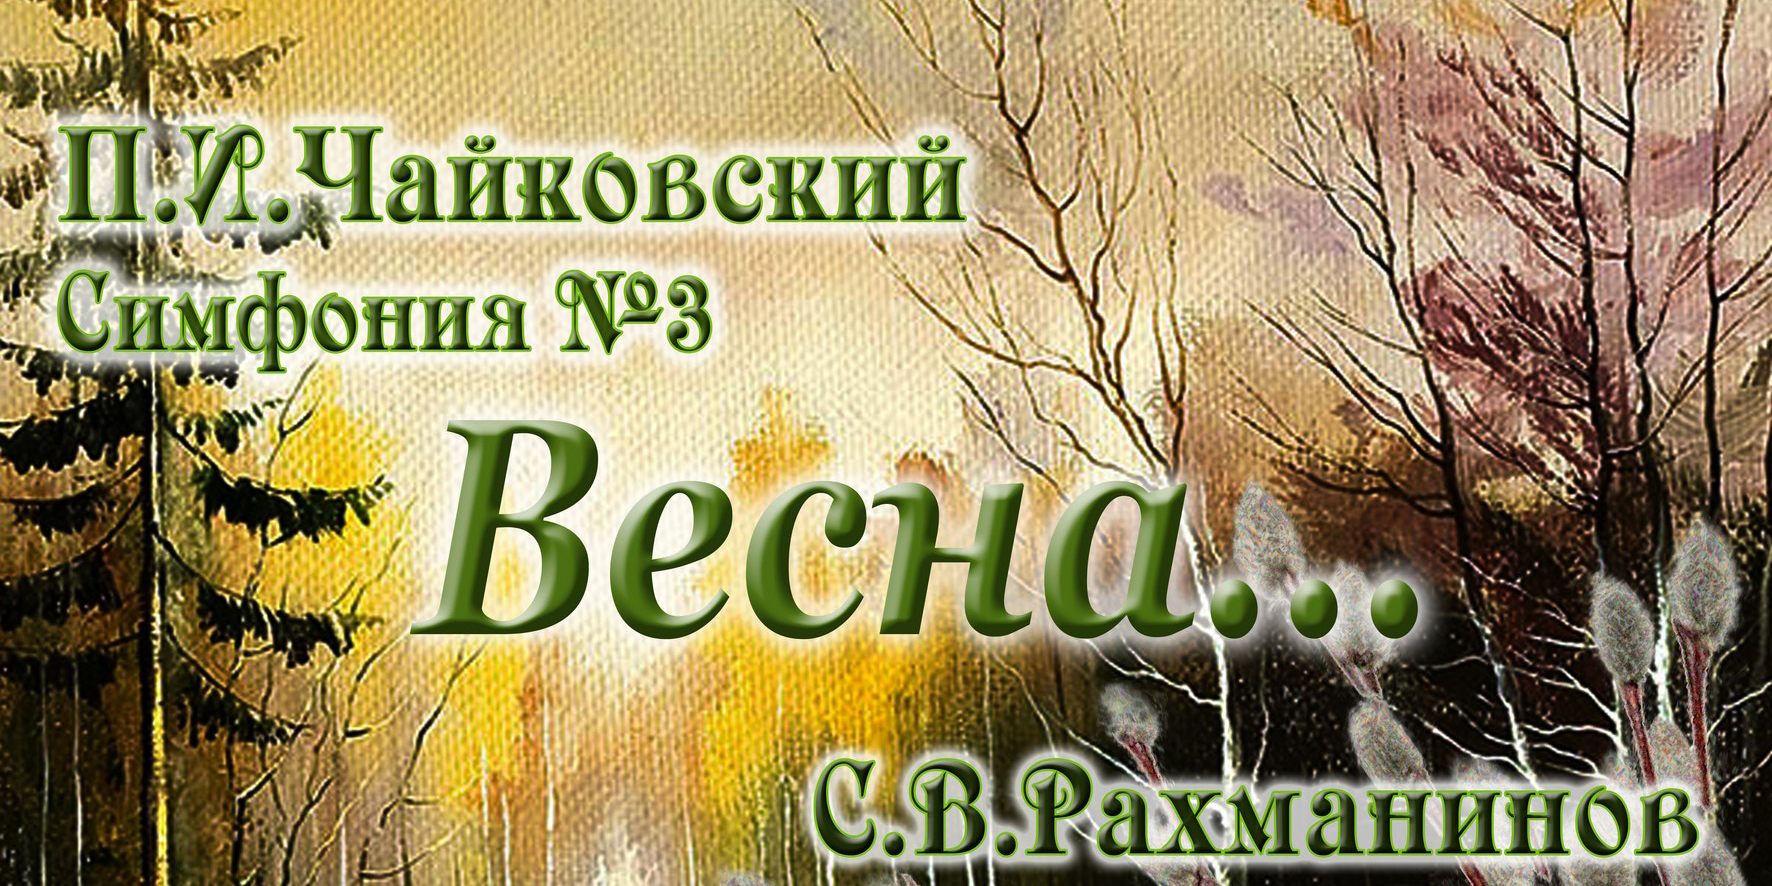 Могилевская городская капелла представит 7 апреля программу «Весна...»